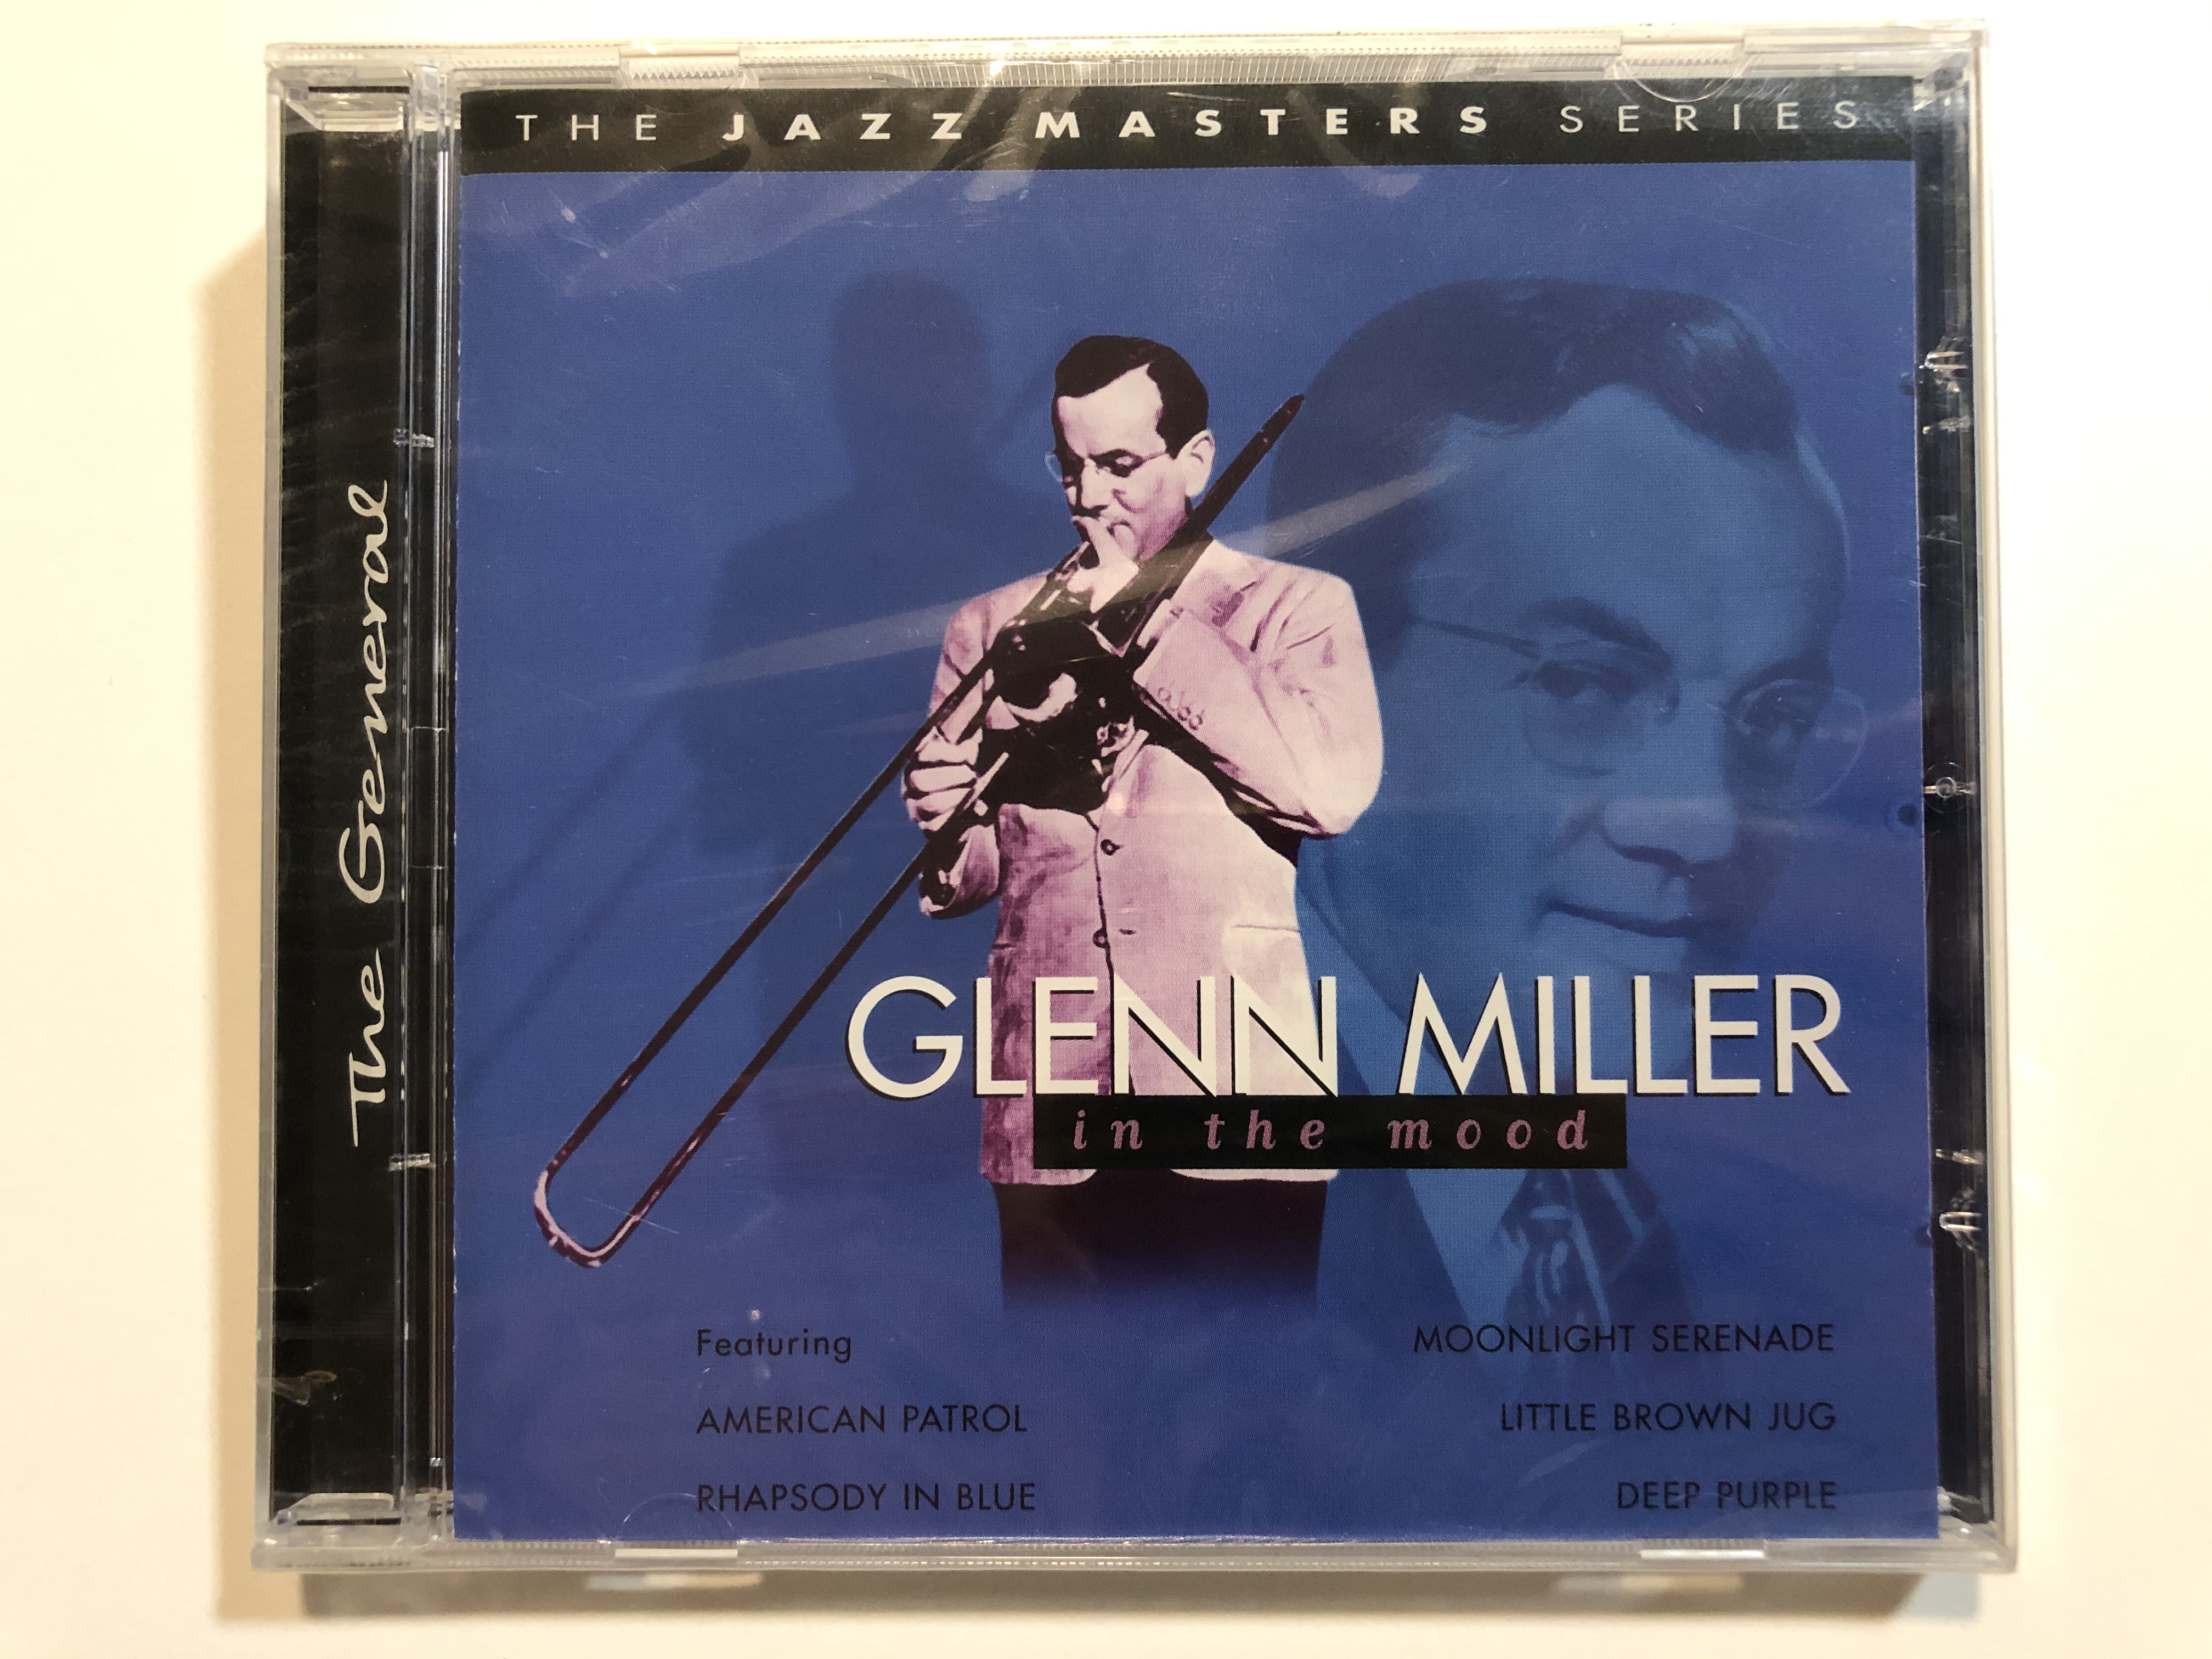 glenn-miller-in-the-mood-featuring-american-patrol-rhapsody-in-blue-monnlight-serenade-little-brown-jug-deep-purple-the-jazz-masters-series-prism-leisure-audio-cd-2002-platcd-775-1-.jpg